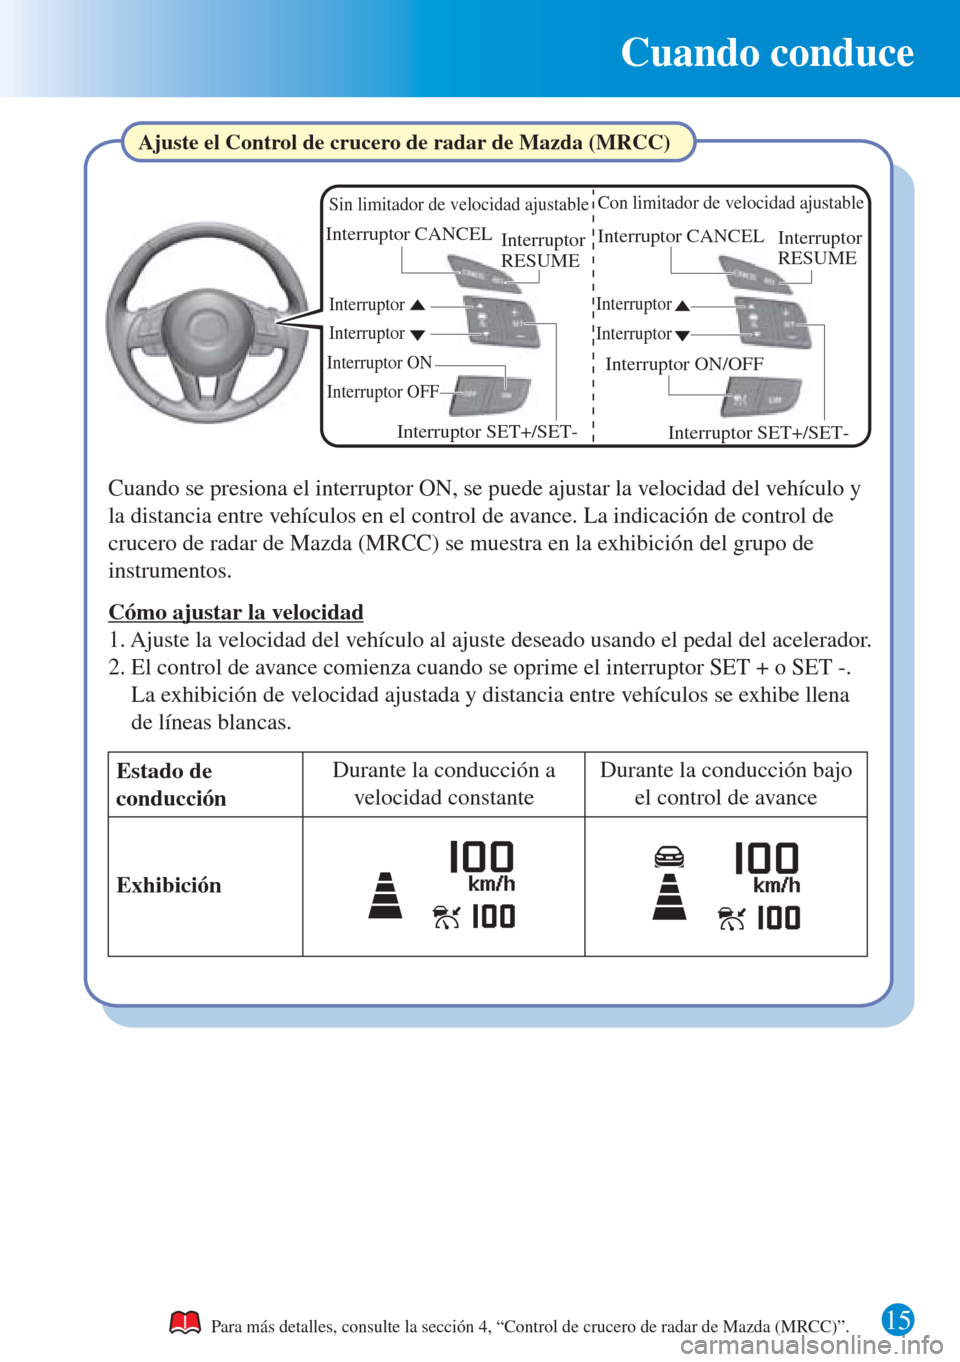 MAZDA MODEL CX-3 2016  Guía rápida (in Spanish) Cuando conduce
15Para más detalles, consulte la sección 4, “Control de crucero de radar de Mazda (MRCC)”.
Ajuste el Control de crucero de radar de Mazda (MRCC)
Cuando se presiona el interruptor 